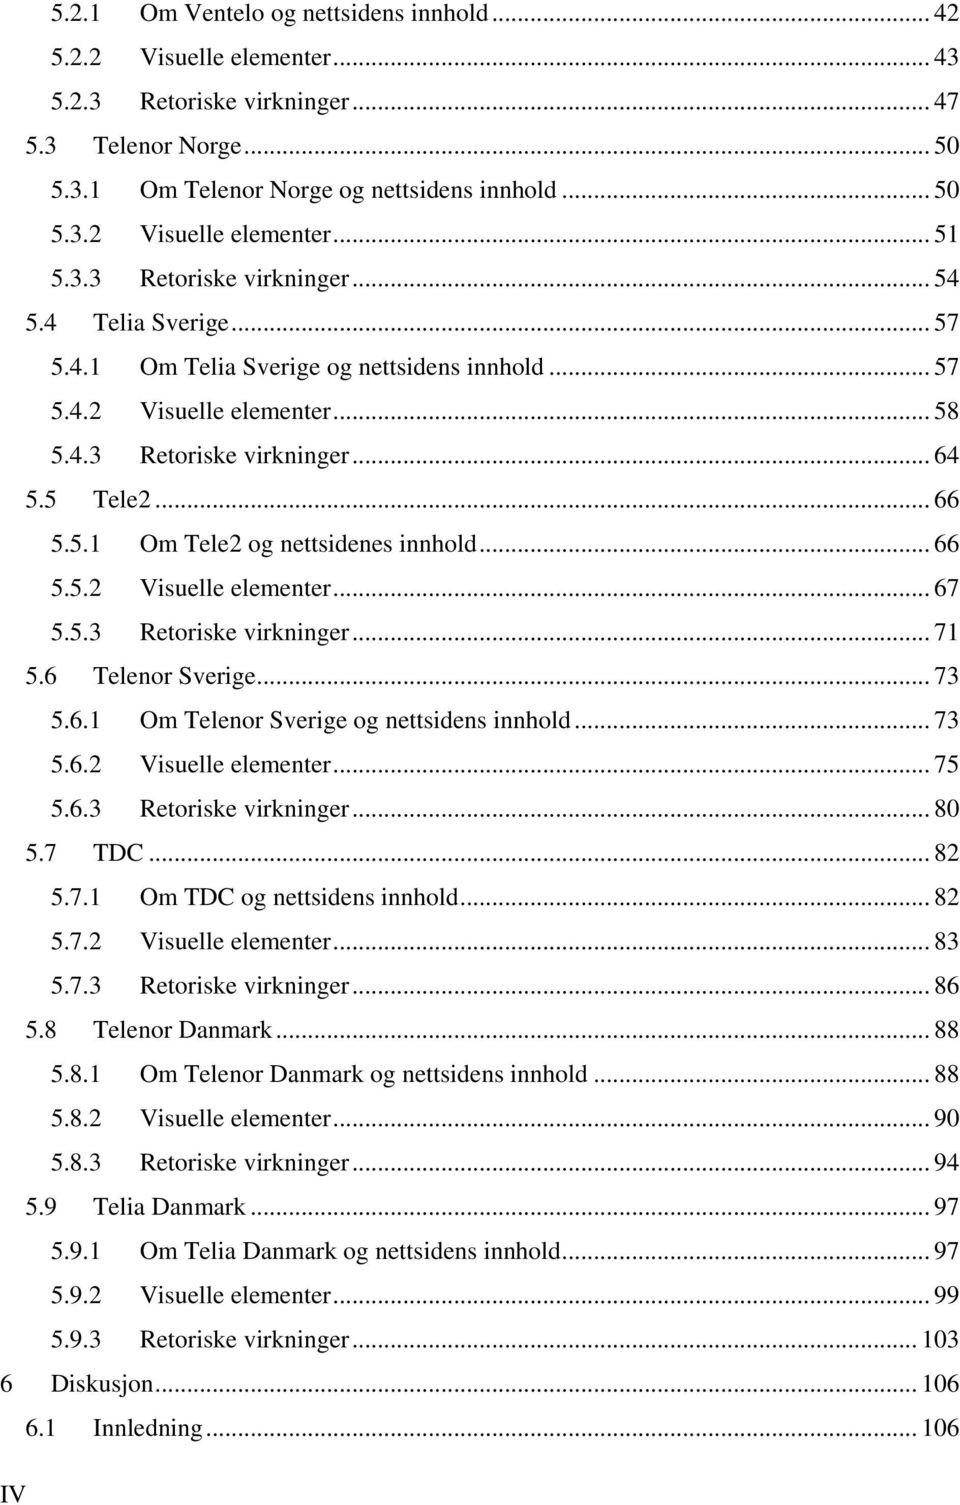 .. 66 5.5.2 Visuelle elementer... 67 5.5.3 Retoriske virkninger... 71 5.6 Telenor Sverige... 73 5.6.1 Om Telenor Sverige og nettsidens innhold... 73 5.6.2 Visuelle elementer... 75 5.6.3 Retoriske virkninger... 80 5.